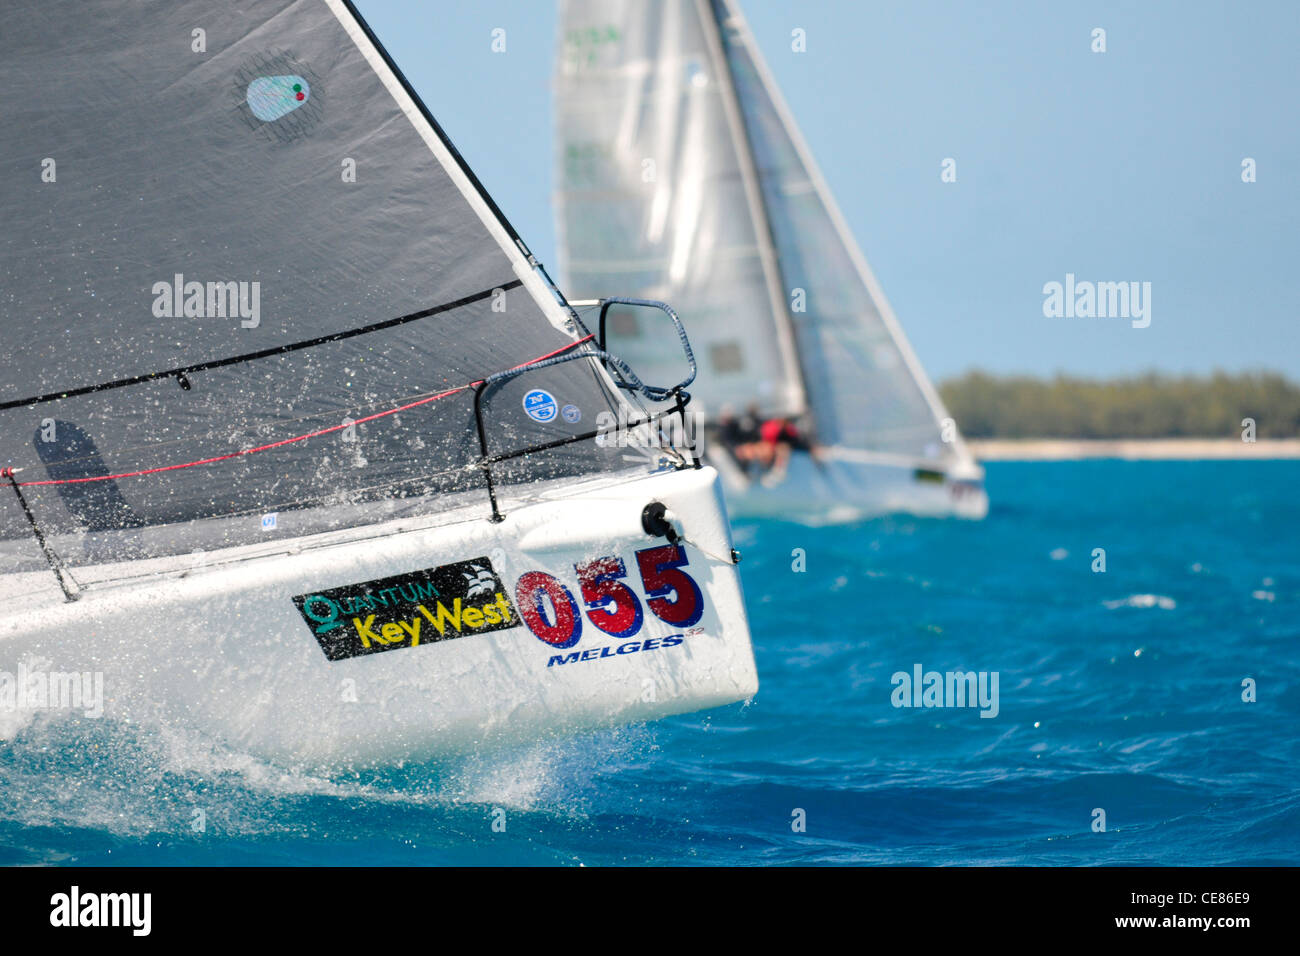 Quantum Key West Race Week 2012 Régate de voile voilier voilier racing yachts yachting Banque D'Images